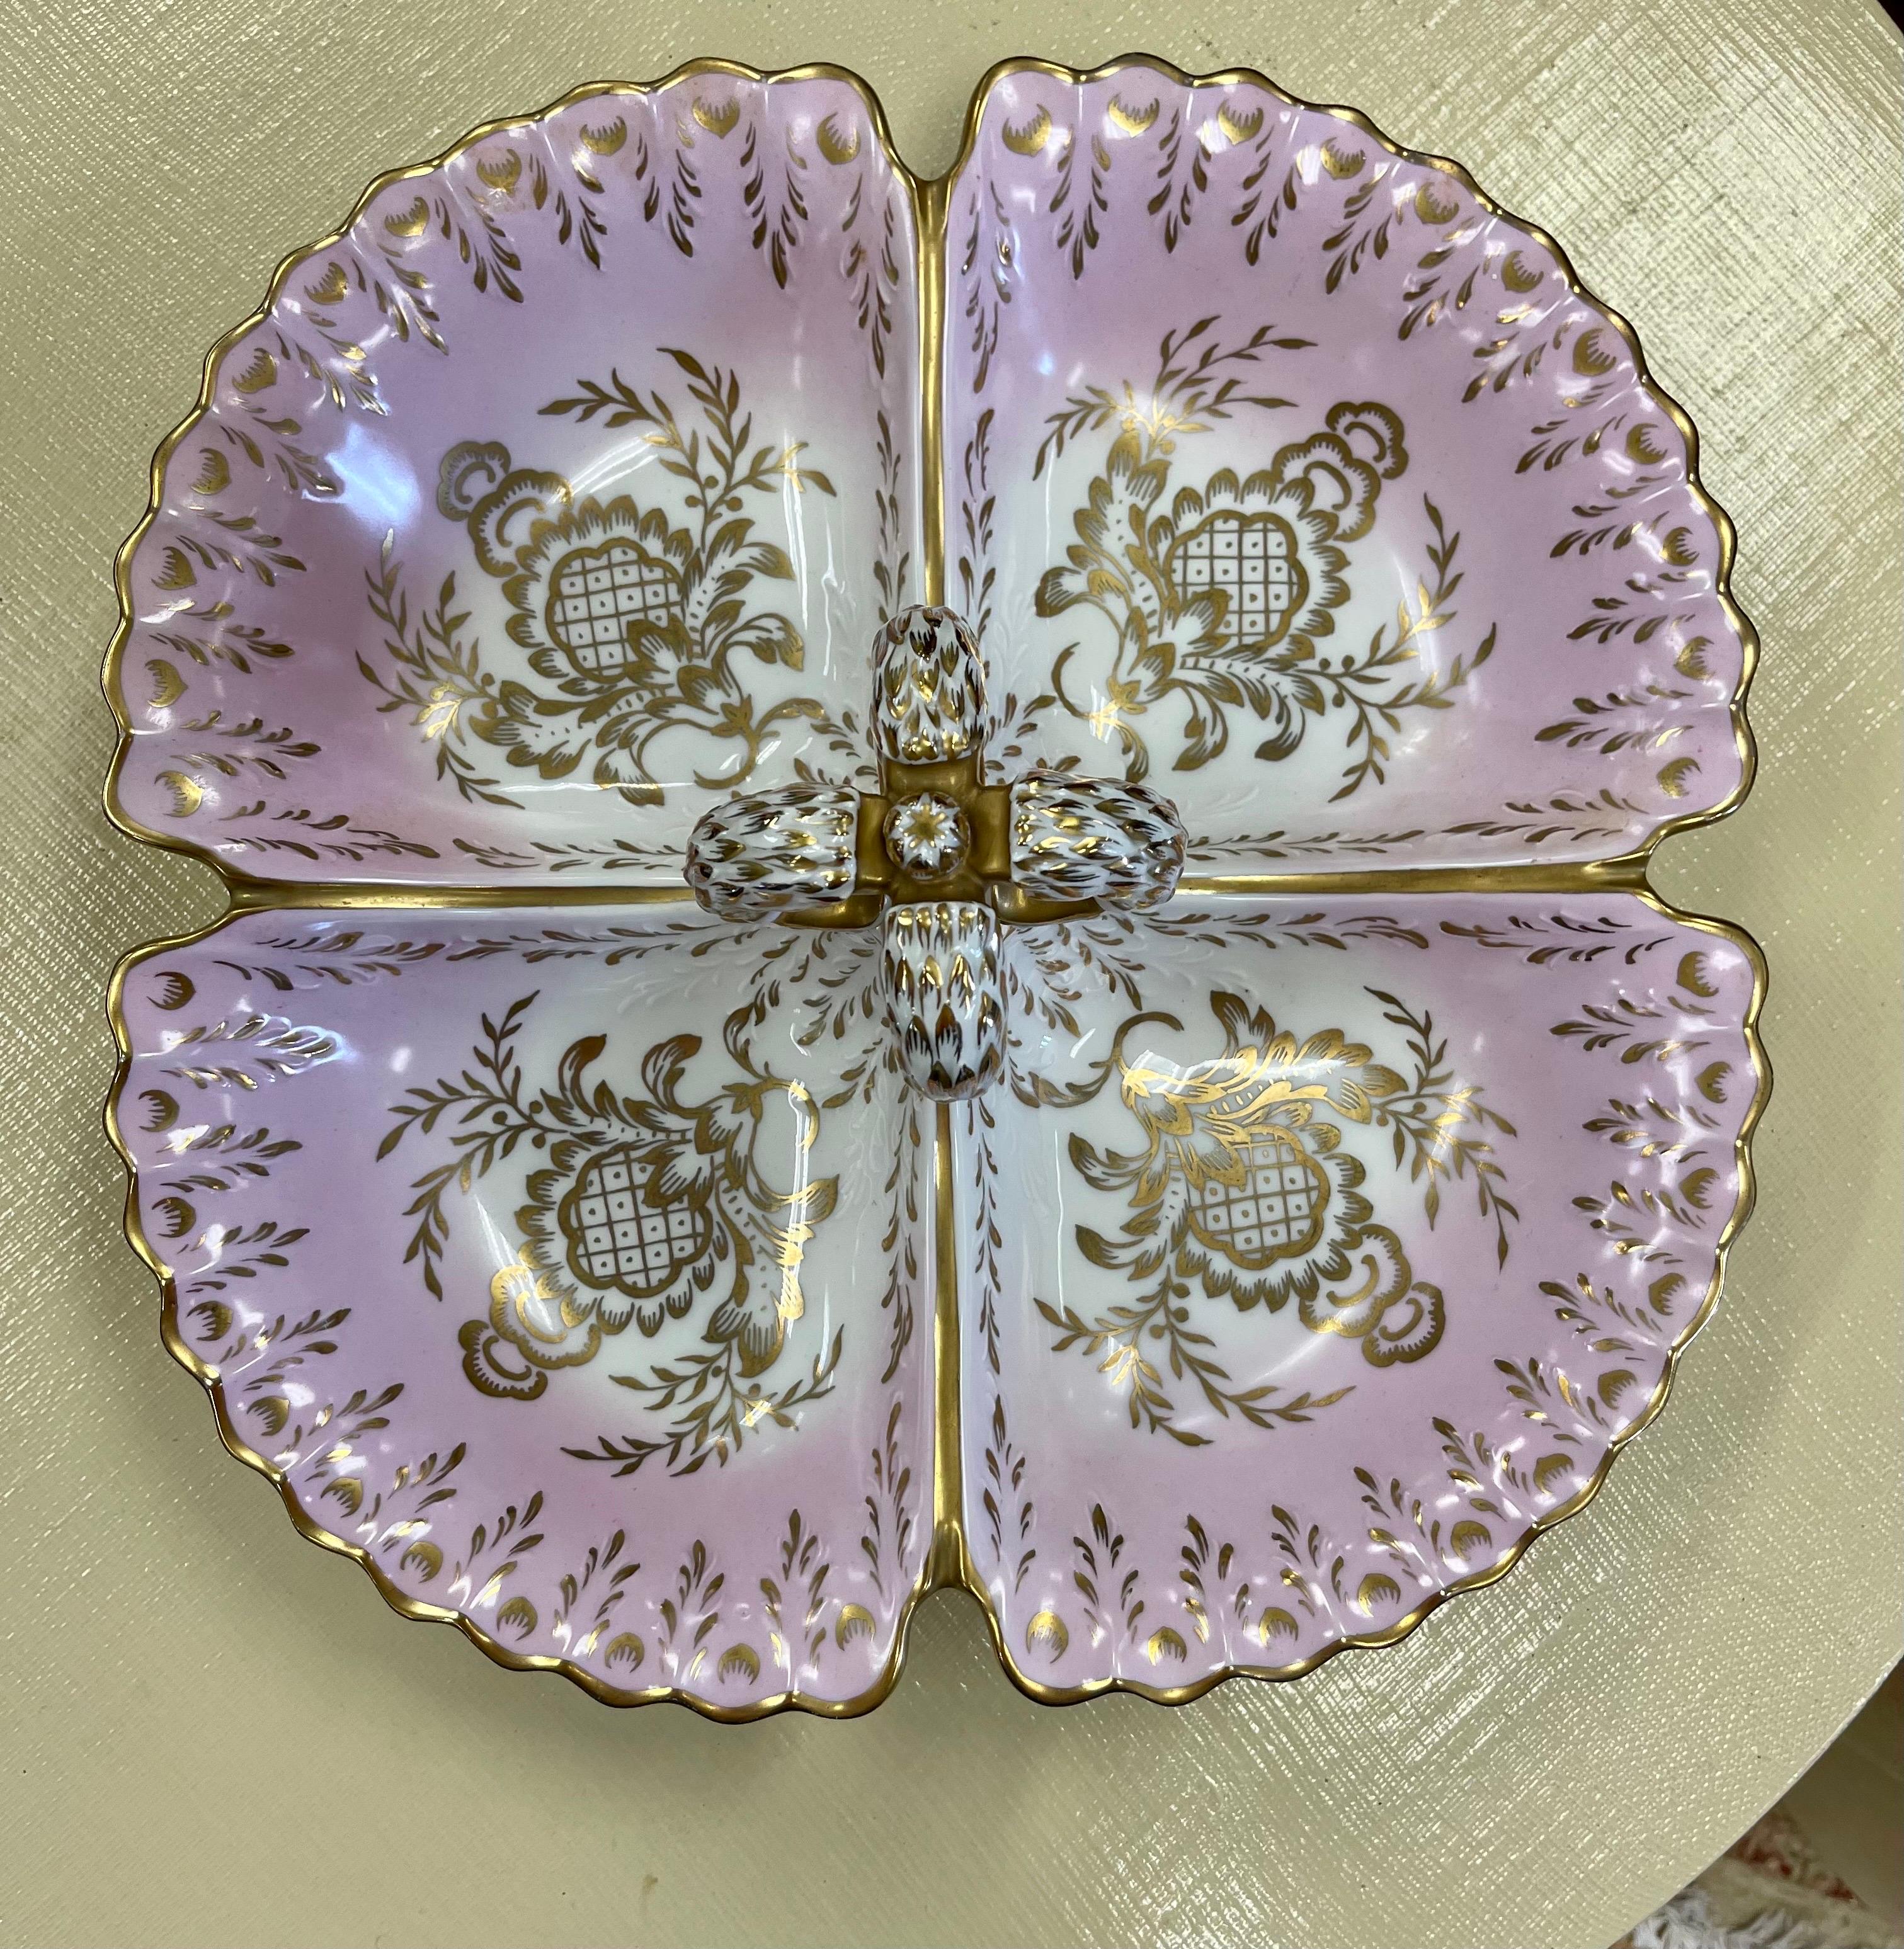 1940's Porcelain Pink and Gold Porcelain Divided Server Dish Platter For Sale 2